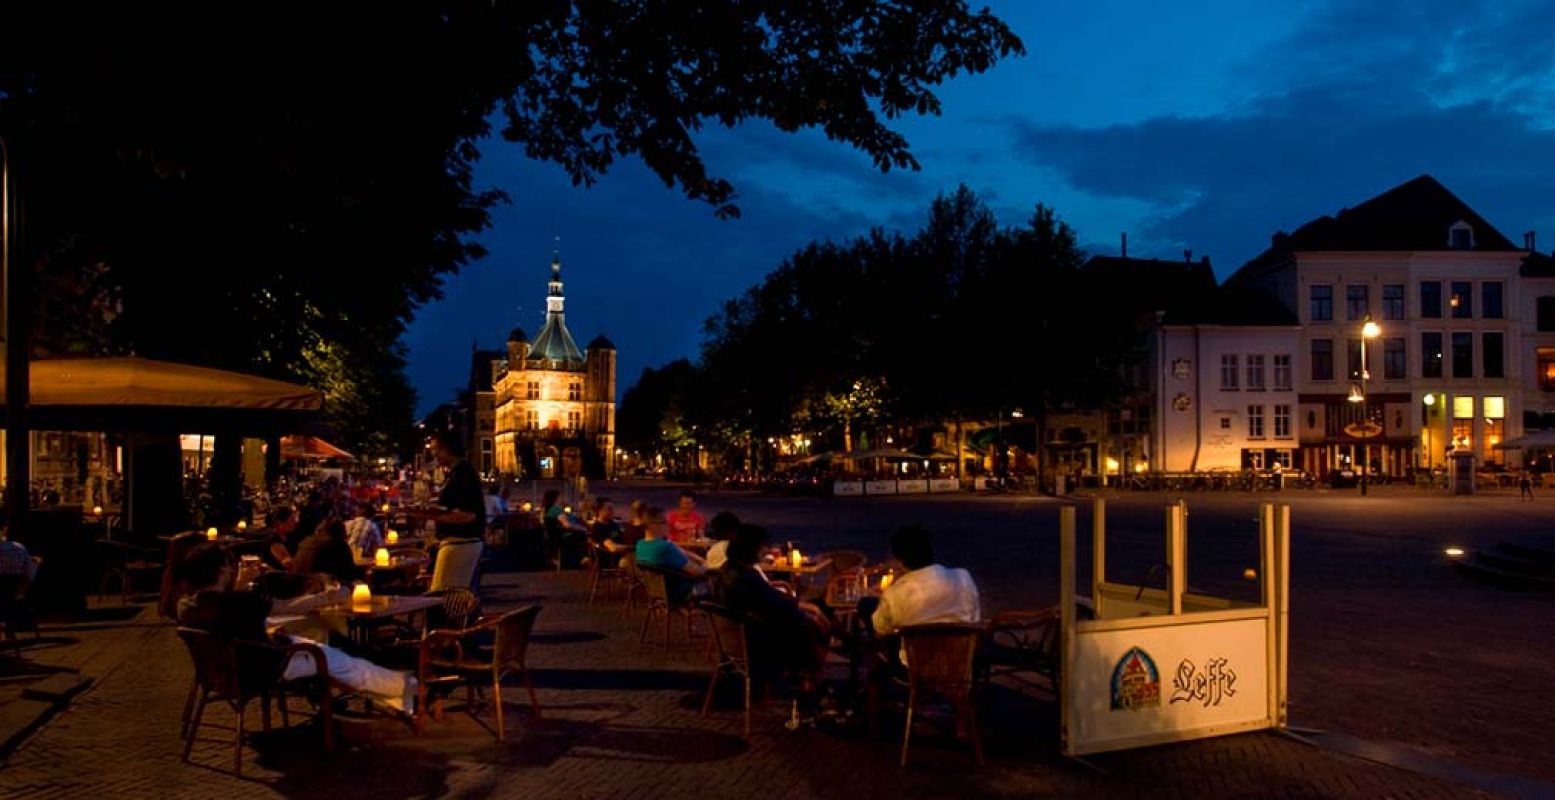 Maak een sfeervolle stadswandeling door een van de oudste steden van ons land. Foto: VVV Deventer.